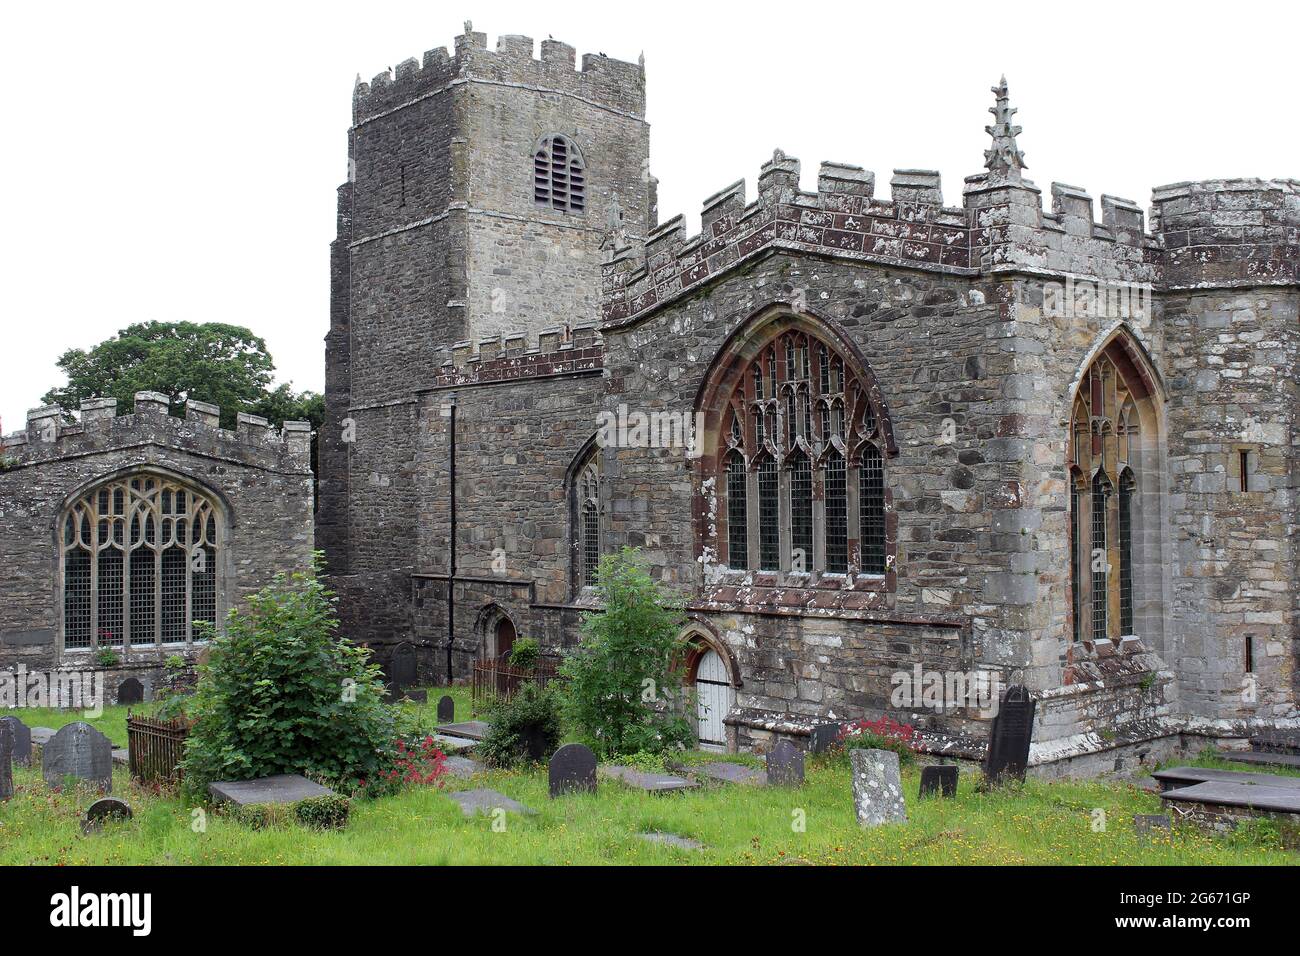 St Beuno's Church, Clynnog Fawr, Llŷn Peninsula, Gwynedd, Wales, UK Stock Photo